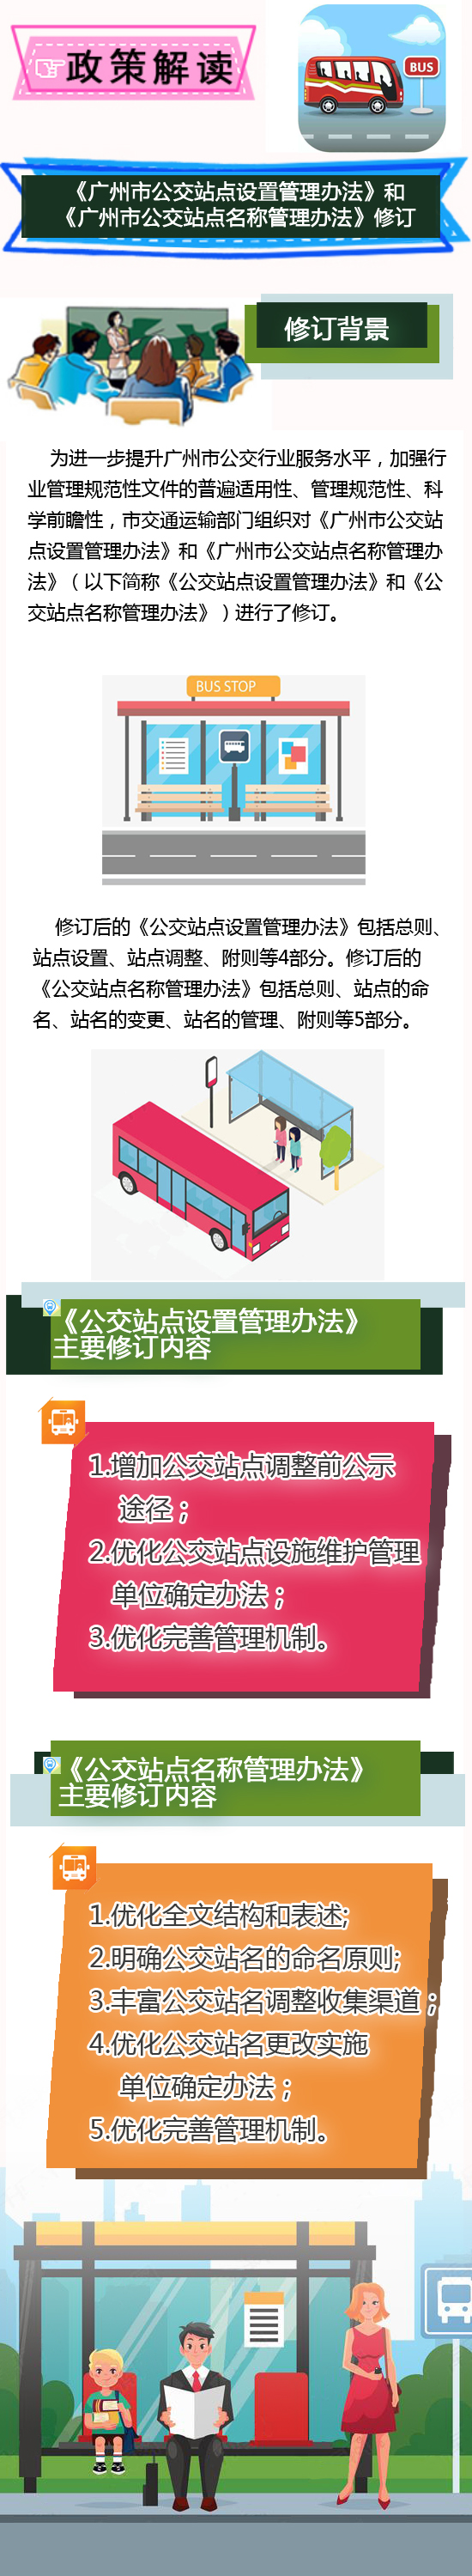 《广州市公交站点设置管理办法》《广州市公交站点名称管理办法》_政策解读图文版.jpg